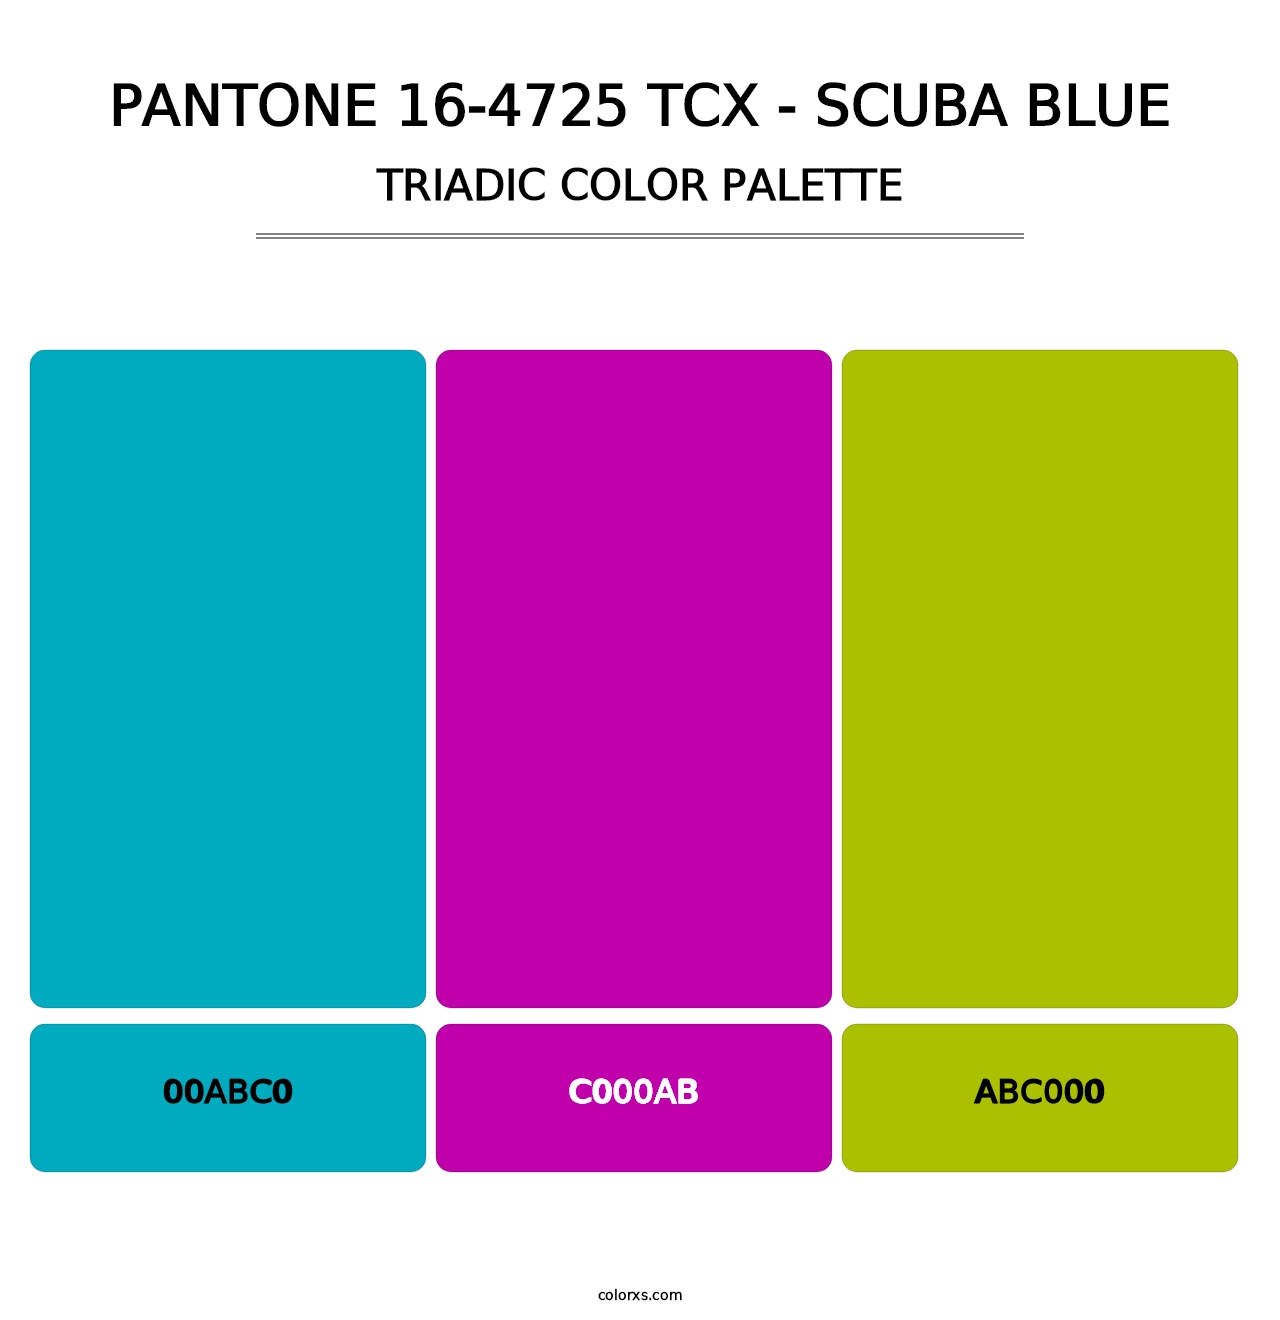 PANTONE 16-4725 TCX - Scuba Blue - Triadic Color Palette